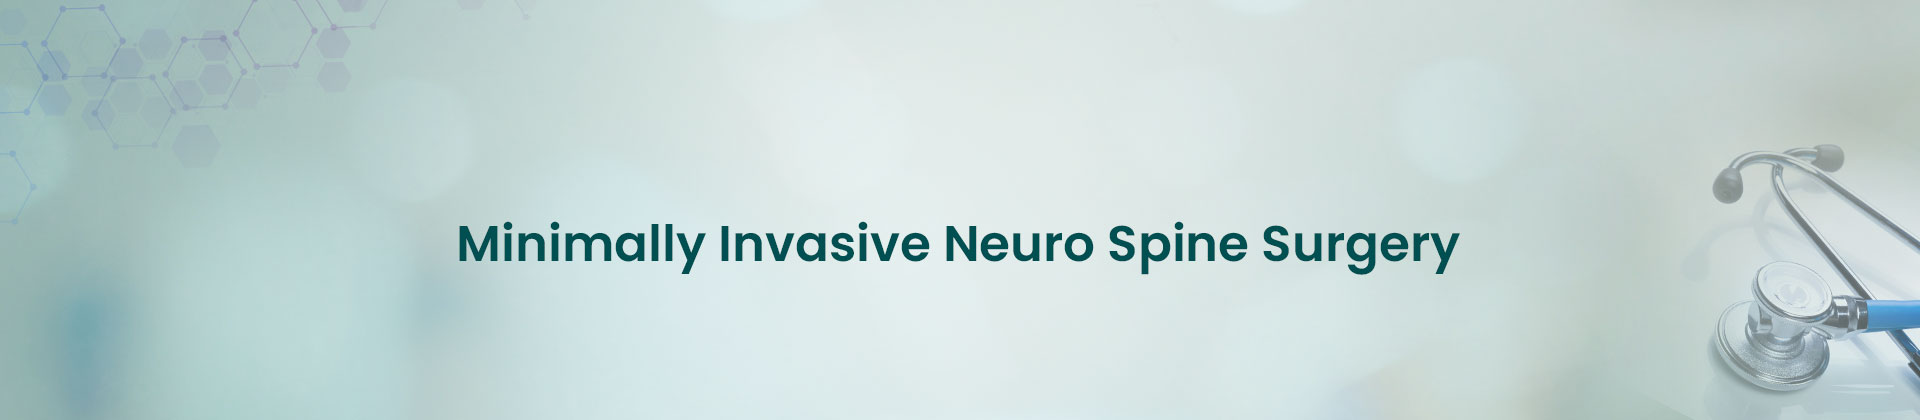 Minimally Invasive Neuro Spine Surgery